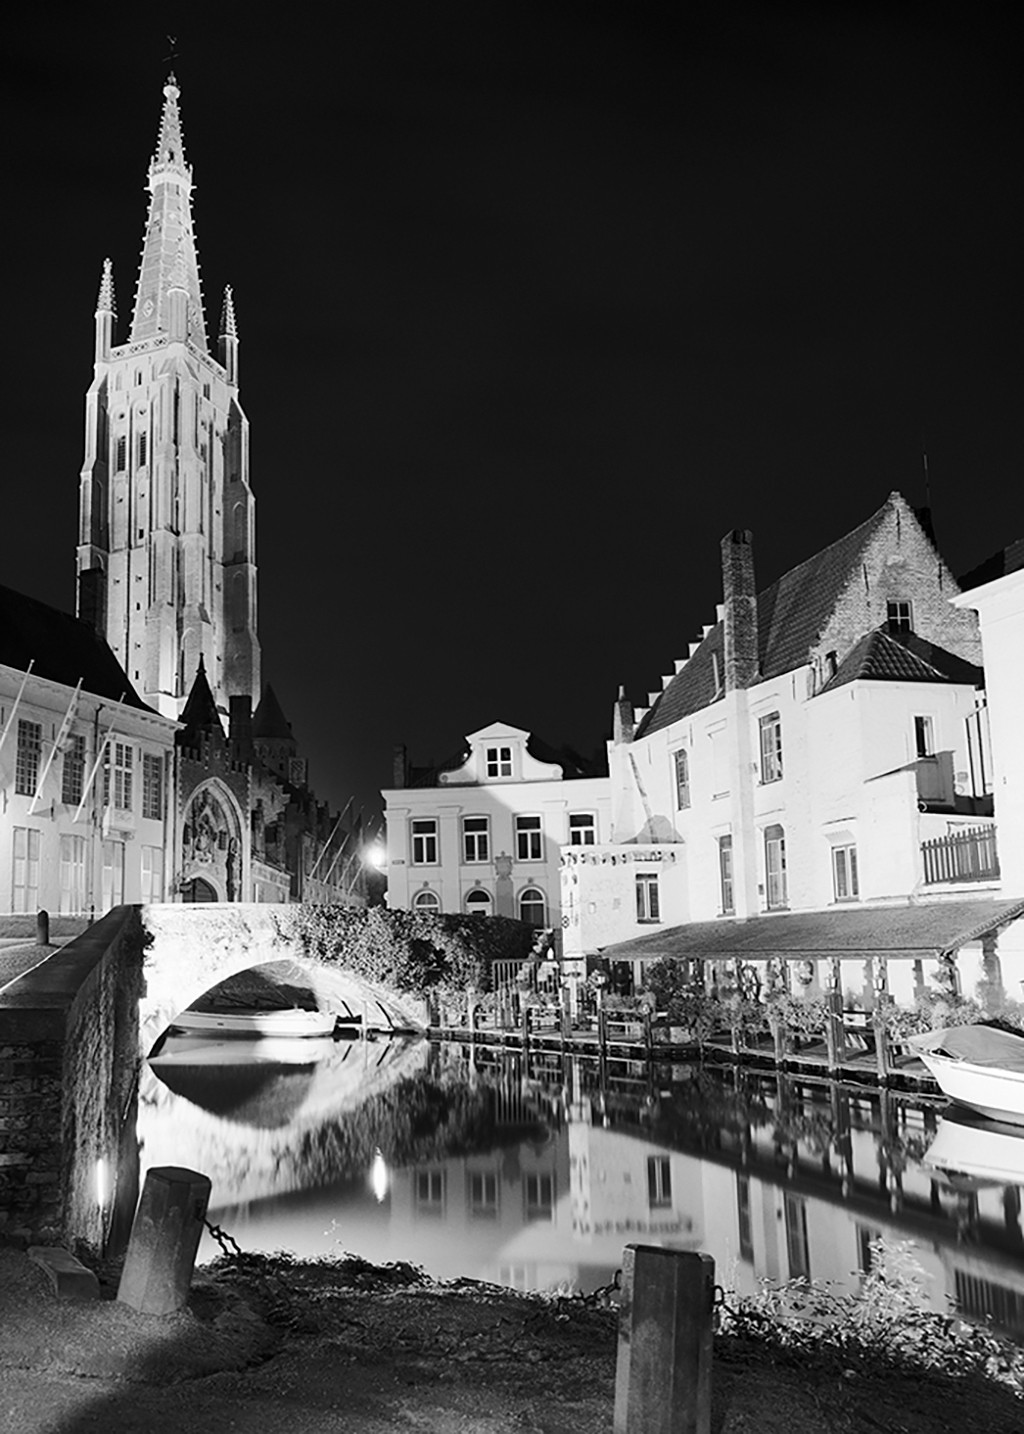 Dave Butcher, Bruges Canal Reflections (Wunschgröße, Fotokunst, Städte, Brügge, Kirchturm, Architektur,  Gracht, Gebäude, Abendszene, Lichtstreifen,Spiegelungen,  Wohnzimmer, Treppenhaus, schwarz/weiß)